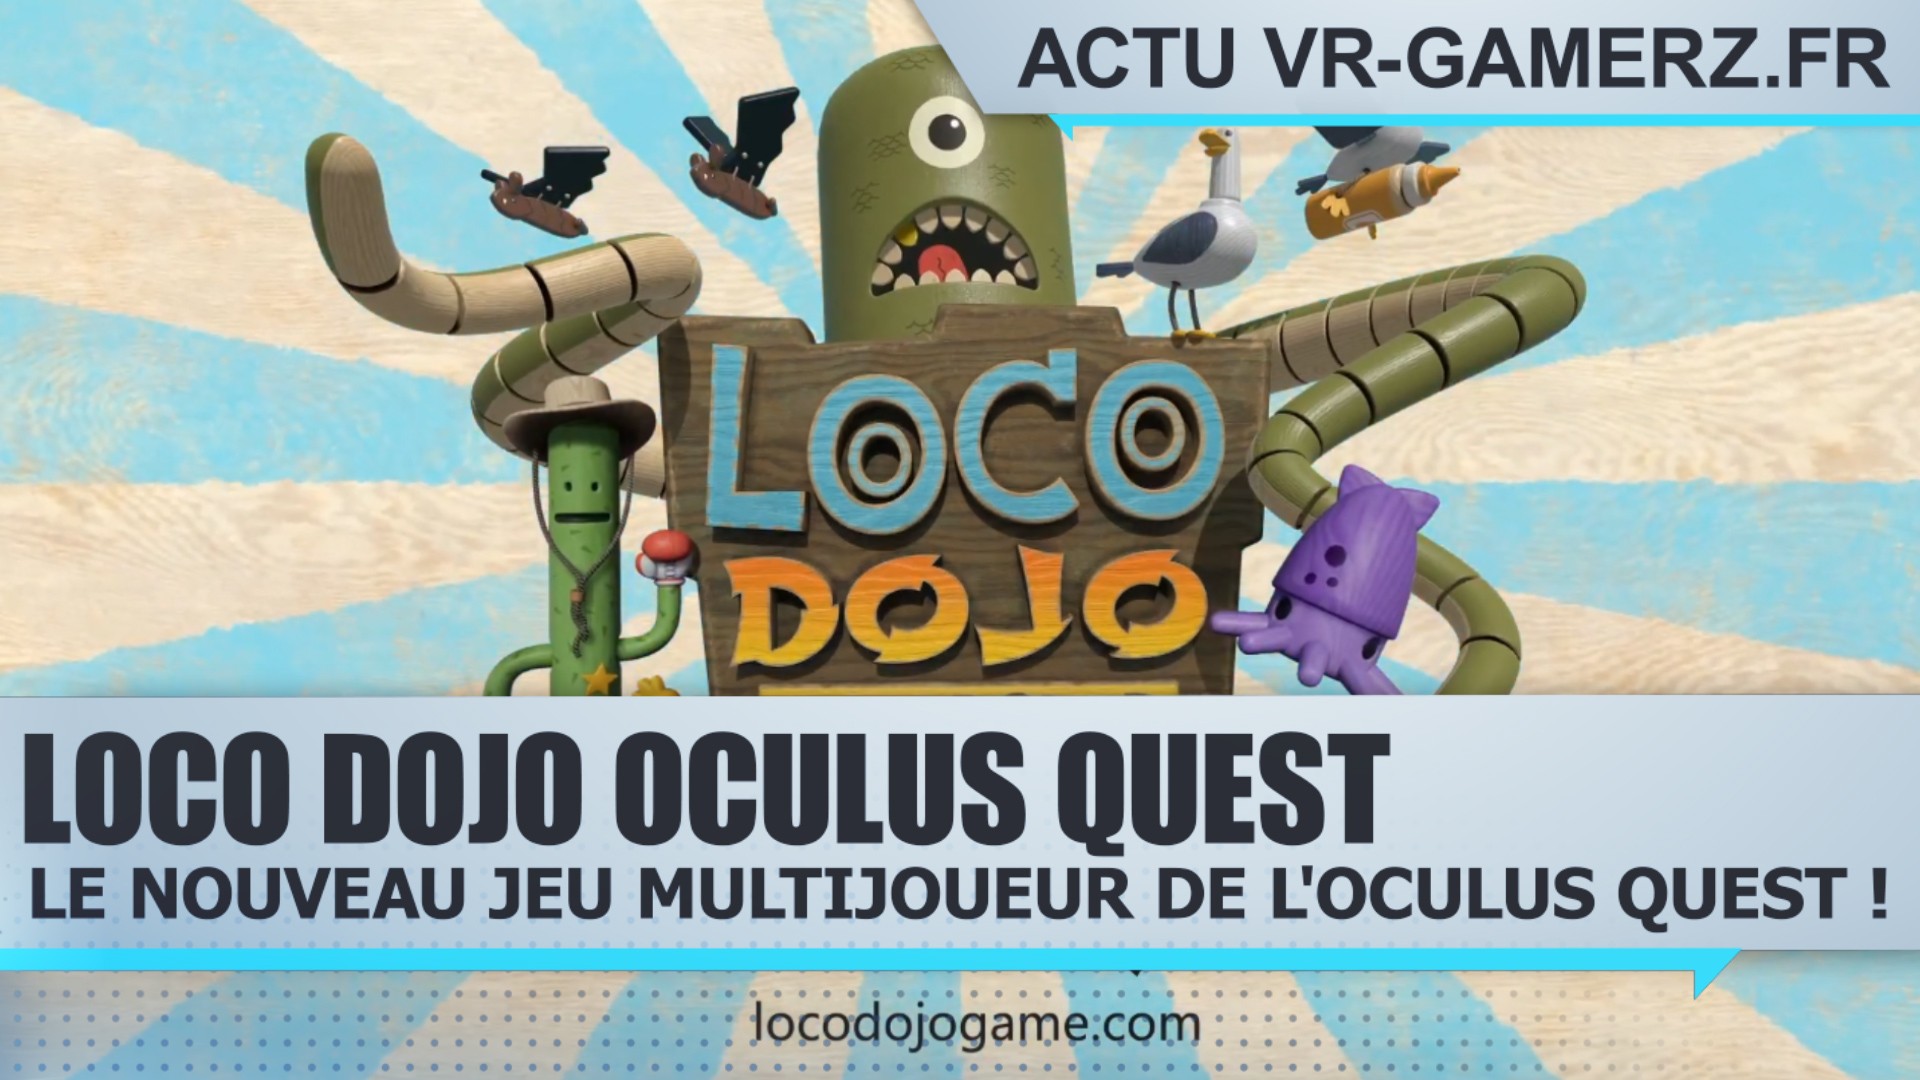 Loco Dojo sur Oculus quest : Le nouveau jeu multijoueur de l’Oculus quest !